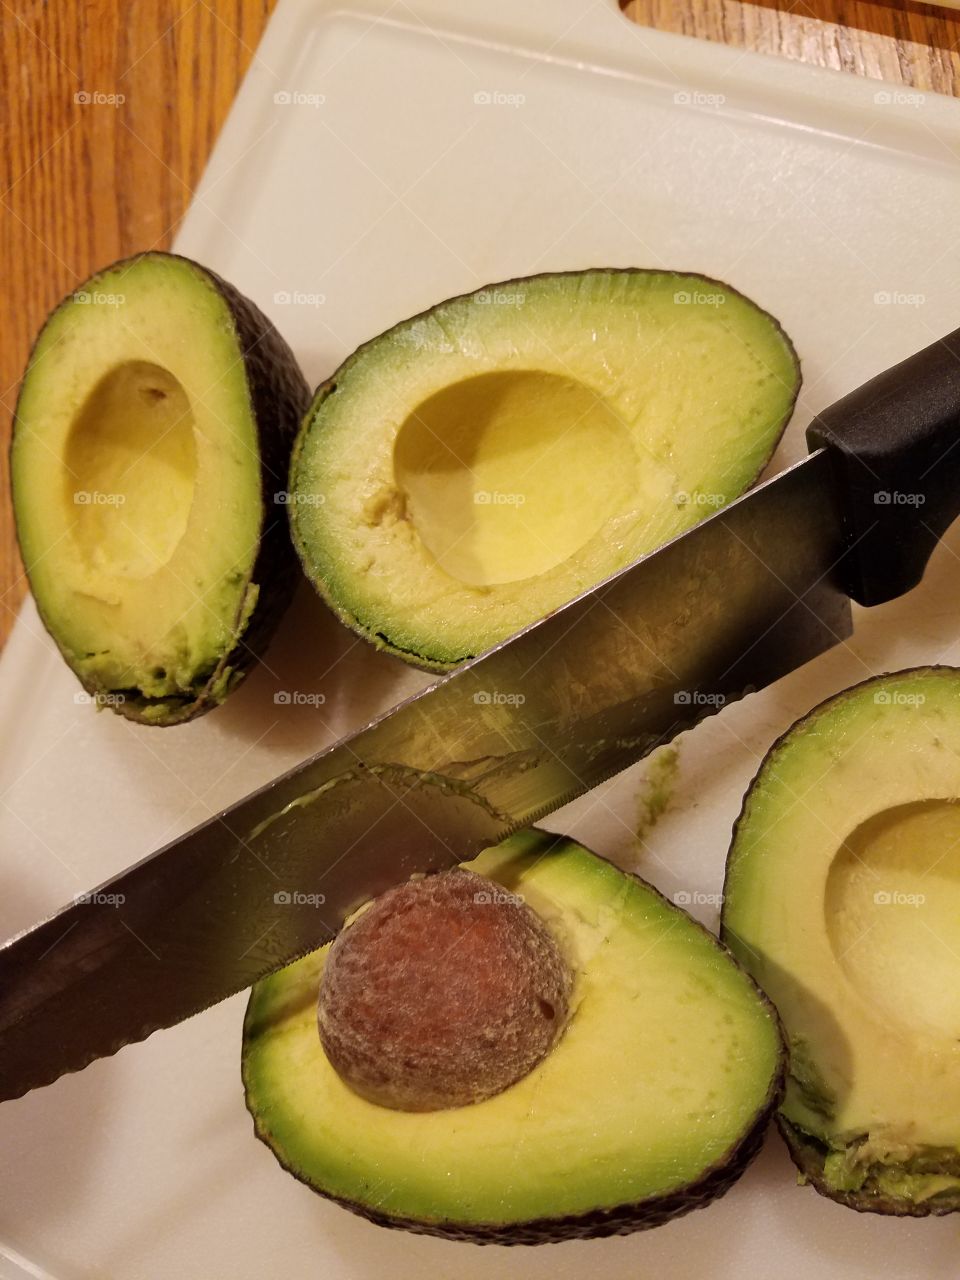 more avocado